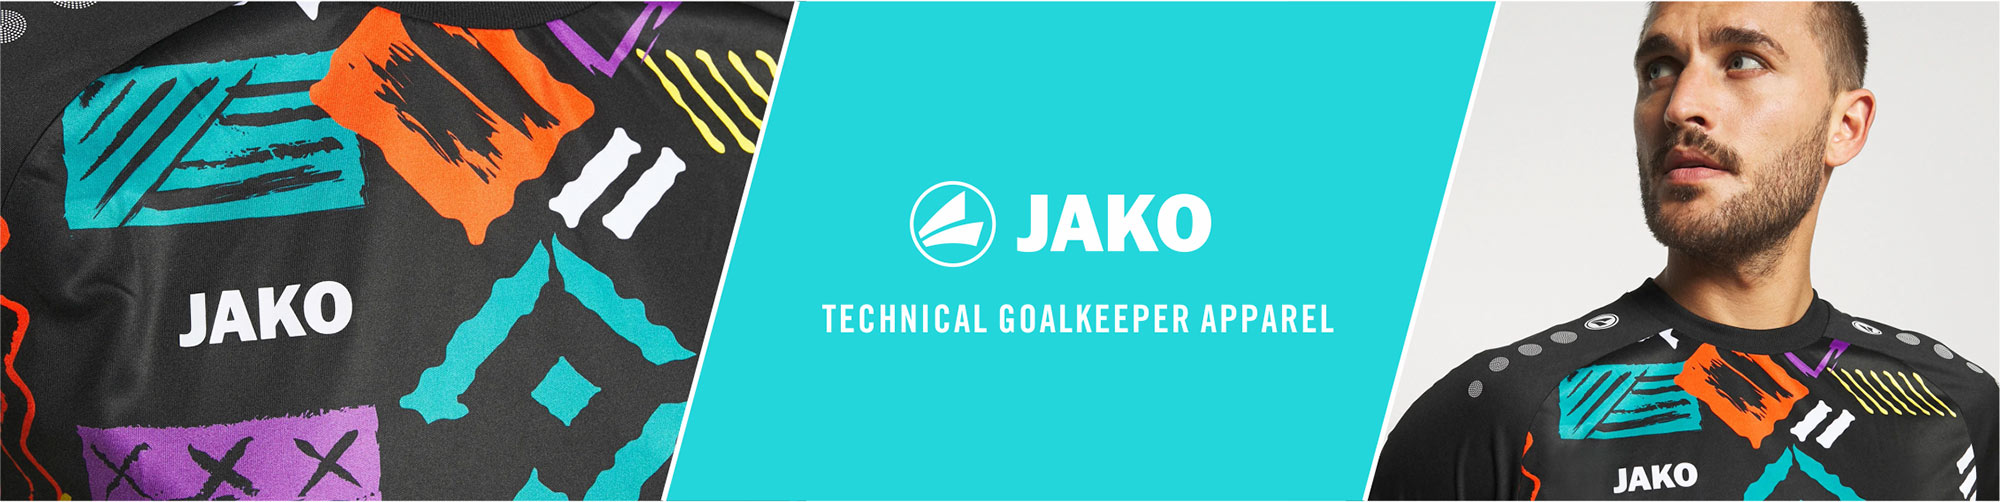 JAKO Teamwear UK goalkeeper apparel